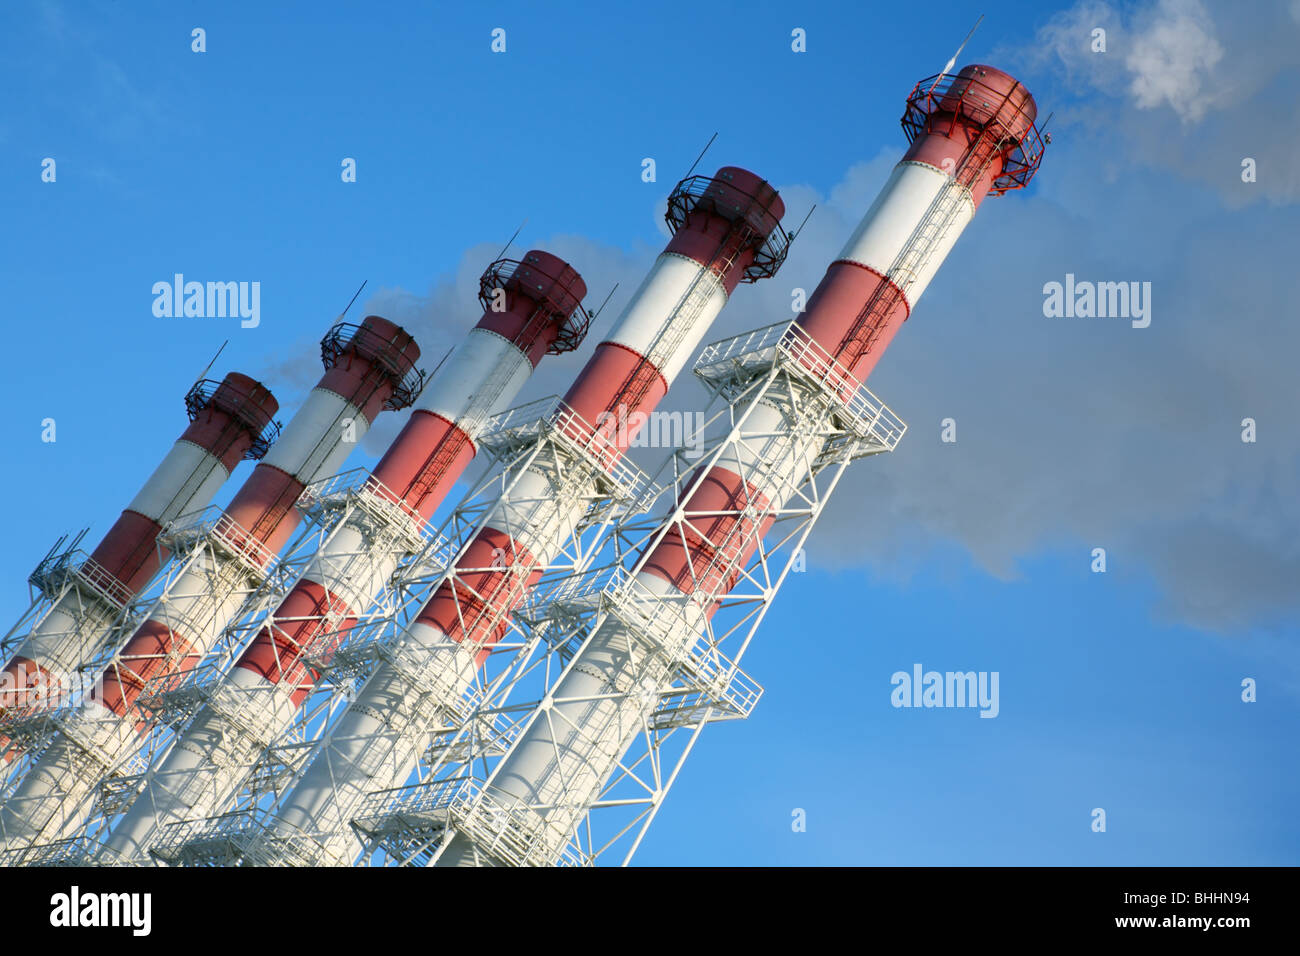 Fünf Schornsteine mit Dampf auf blauen Himmelshintergrund. Neigen Sie Ansicht. Stockfoto